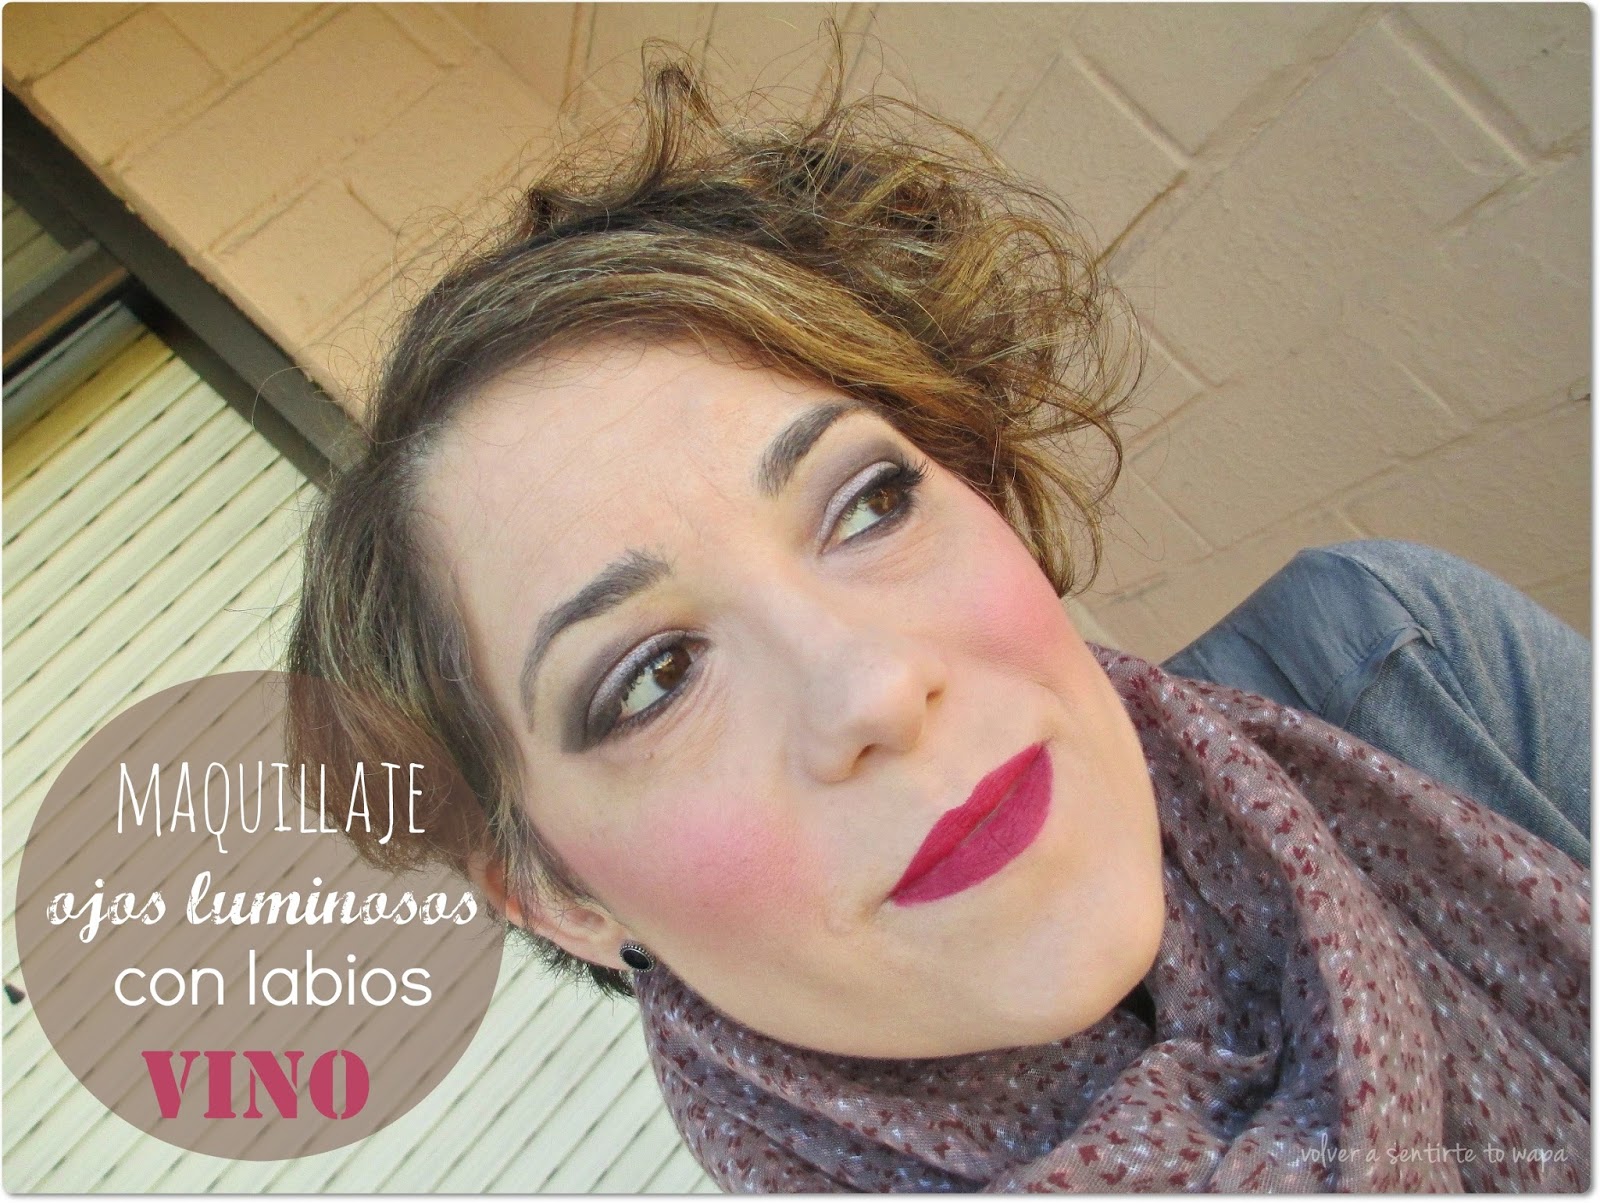 Volver a Sentirte to Wapa - Blog de belleza: Maquillaje: Ojos luminosos y  labios vino